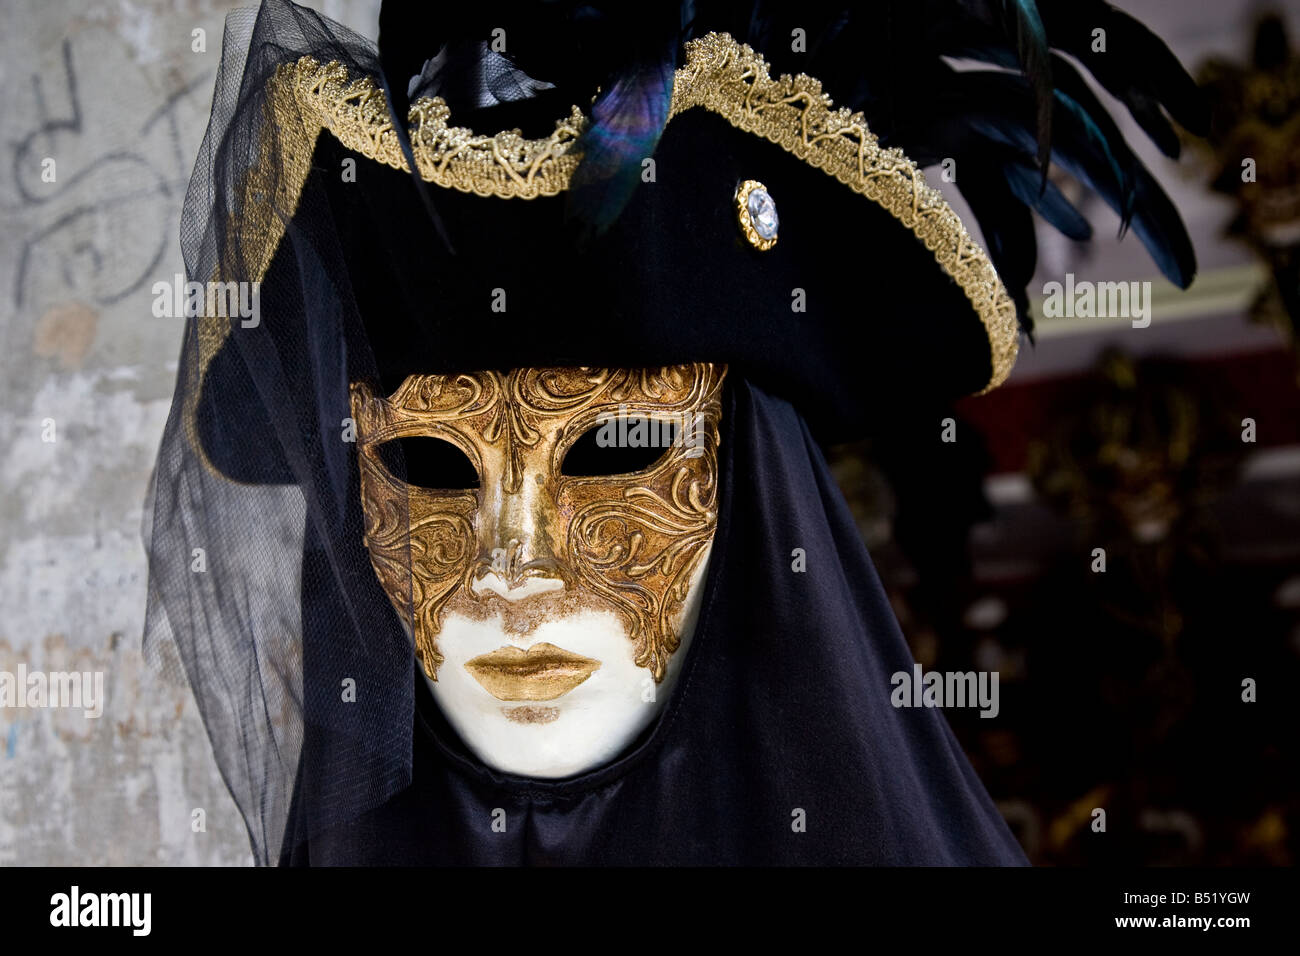 Typiquement vénitien masque noir et or avec voile et jolis détails Venise  Vénétie Italie Europe EU Photo Stock - Alamy